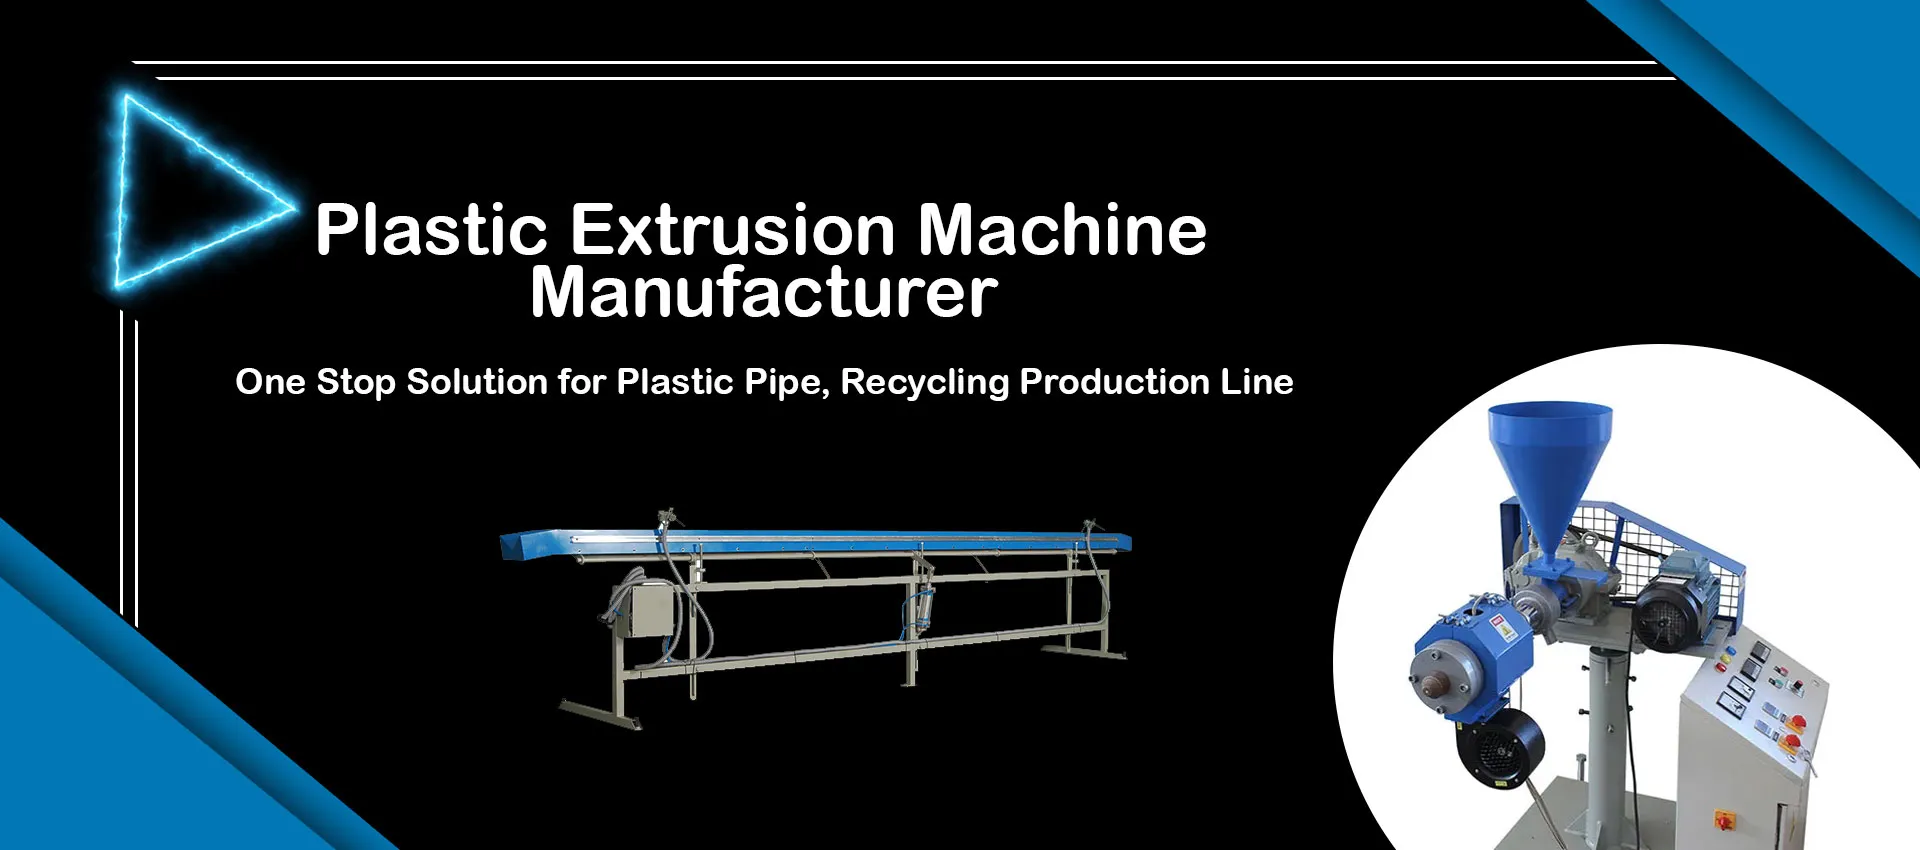 Plastic Extrusion Machine